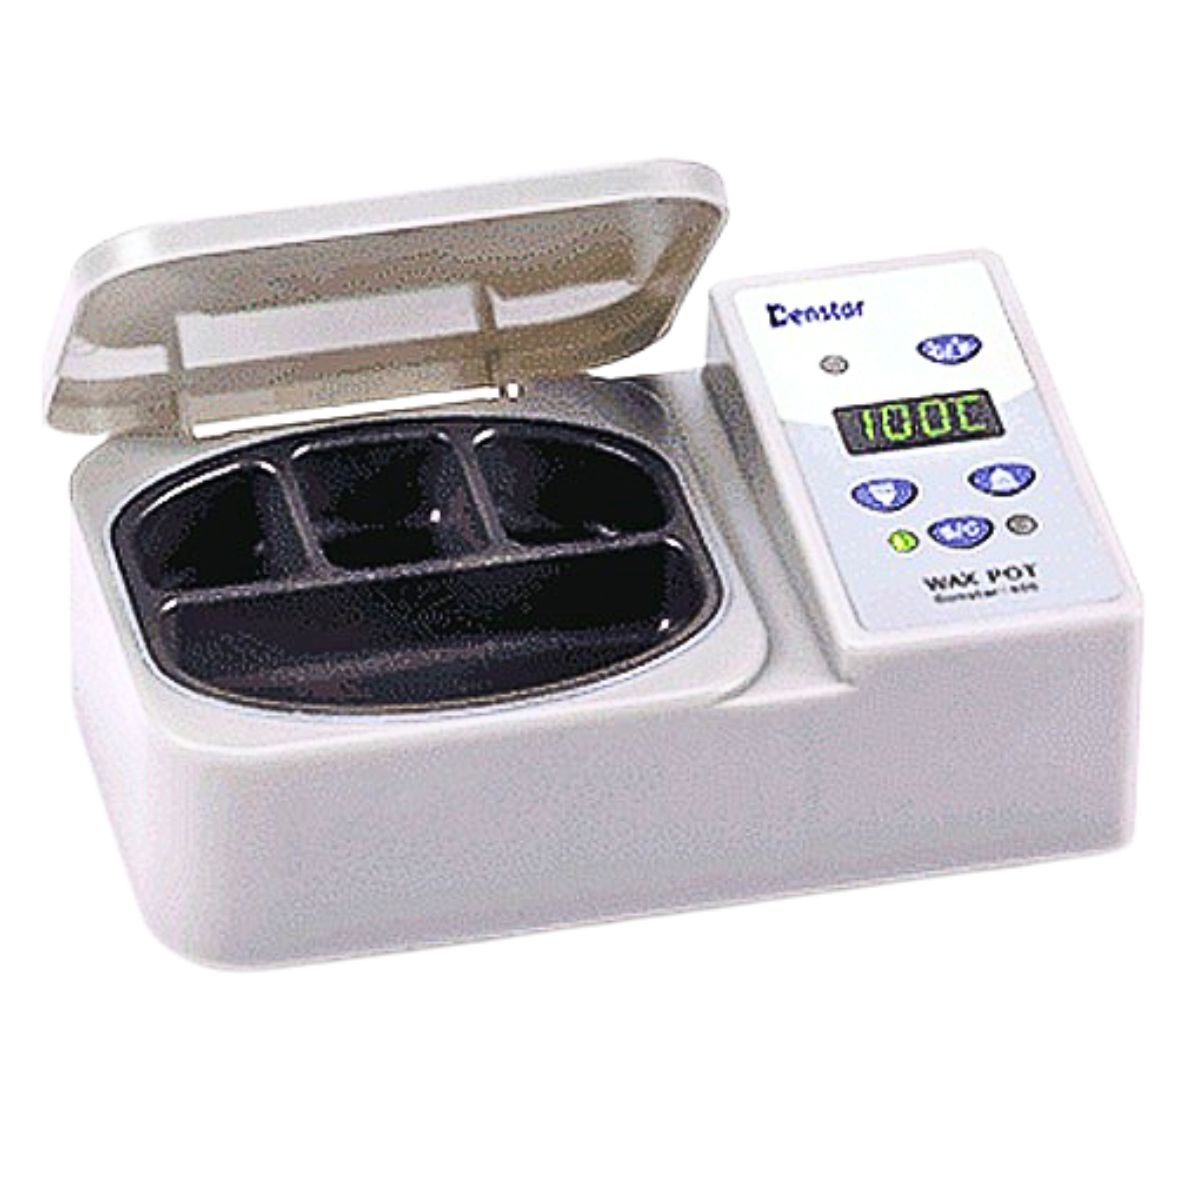 Denstar Digital 4-cell Wax Heater